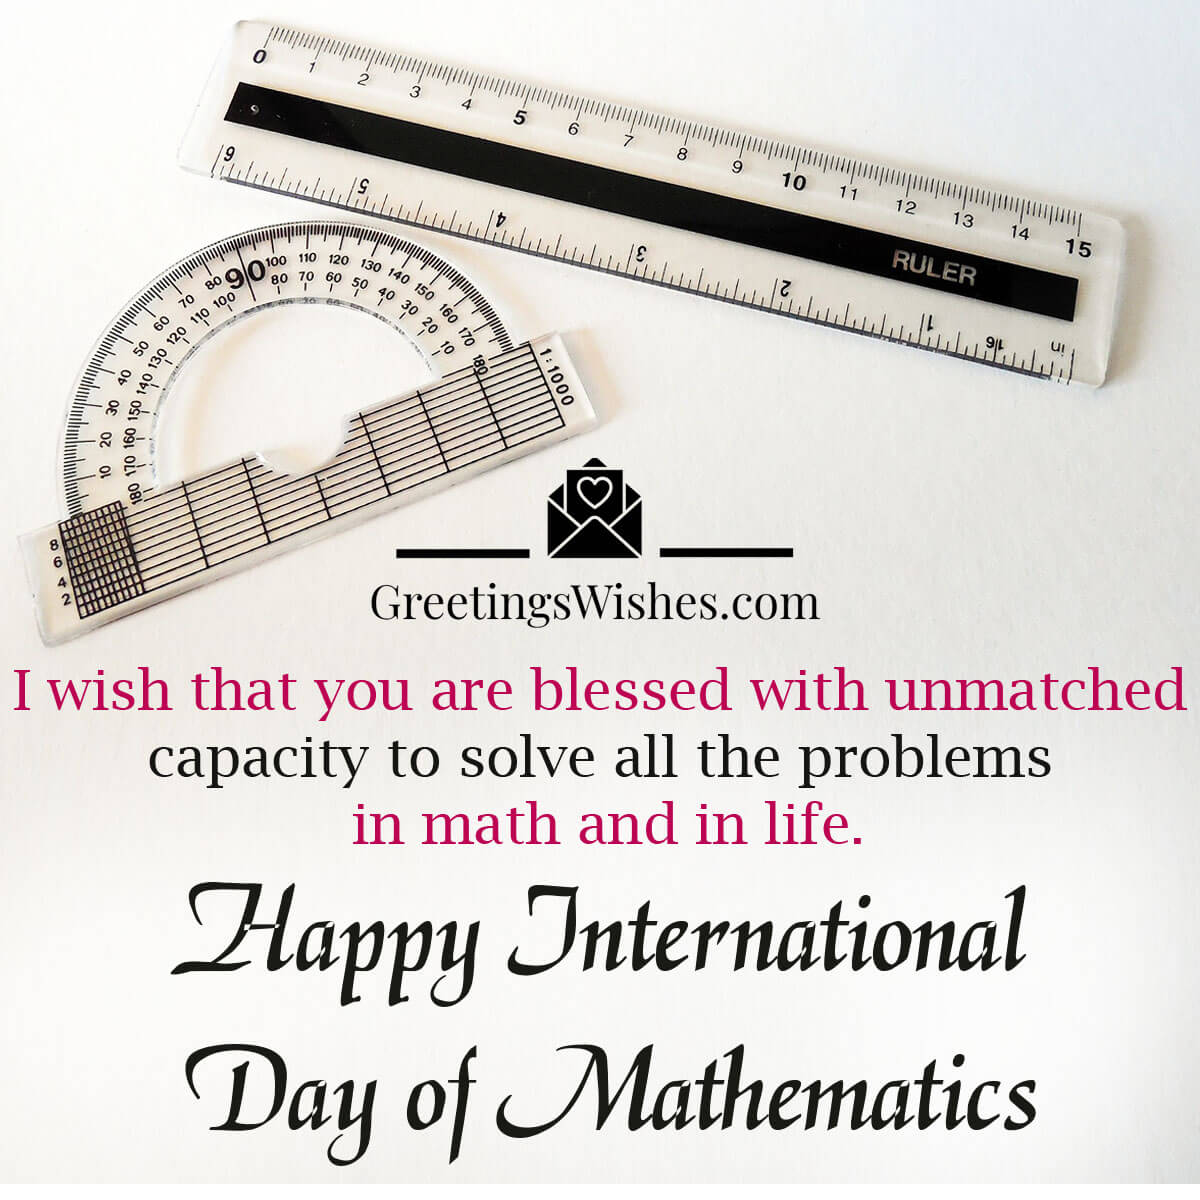 International Mathematics Day